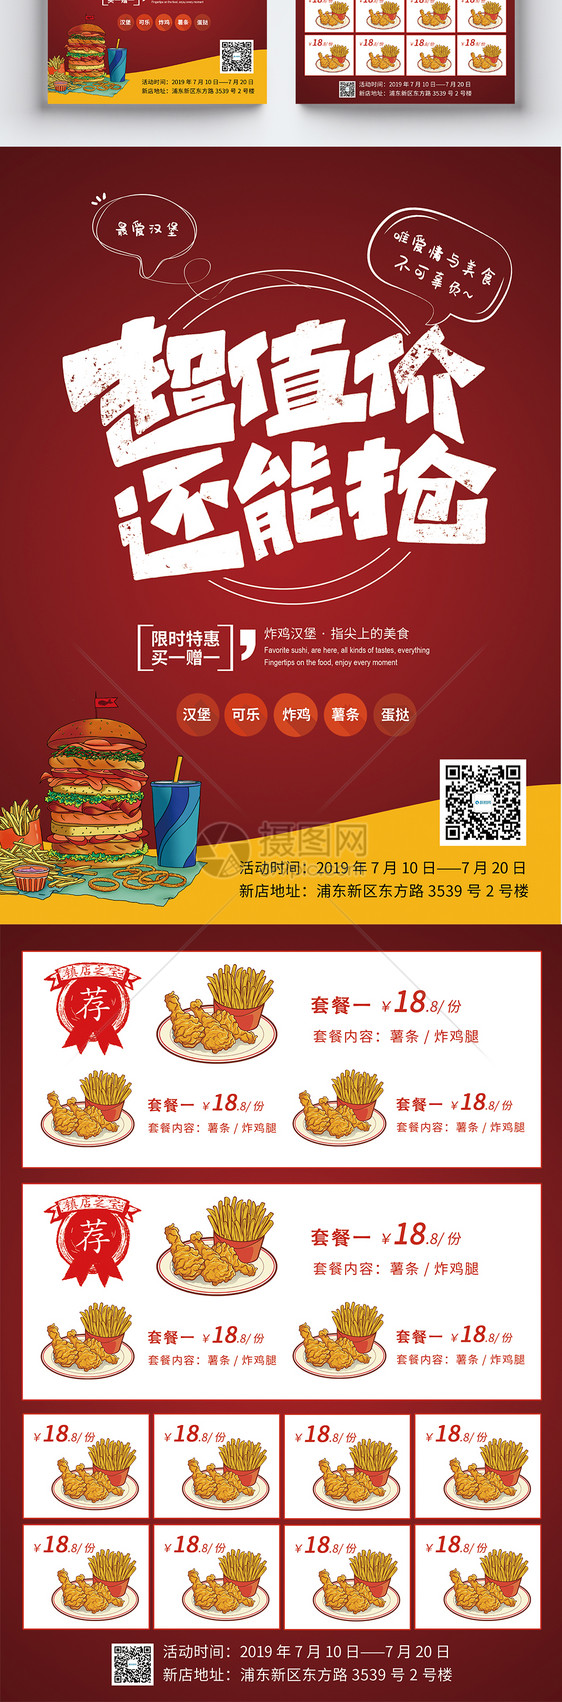 炸鸡汉堡店促销宣传单图片